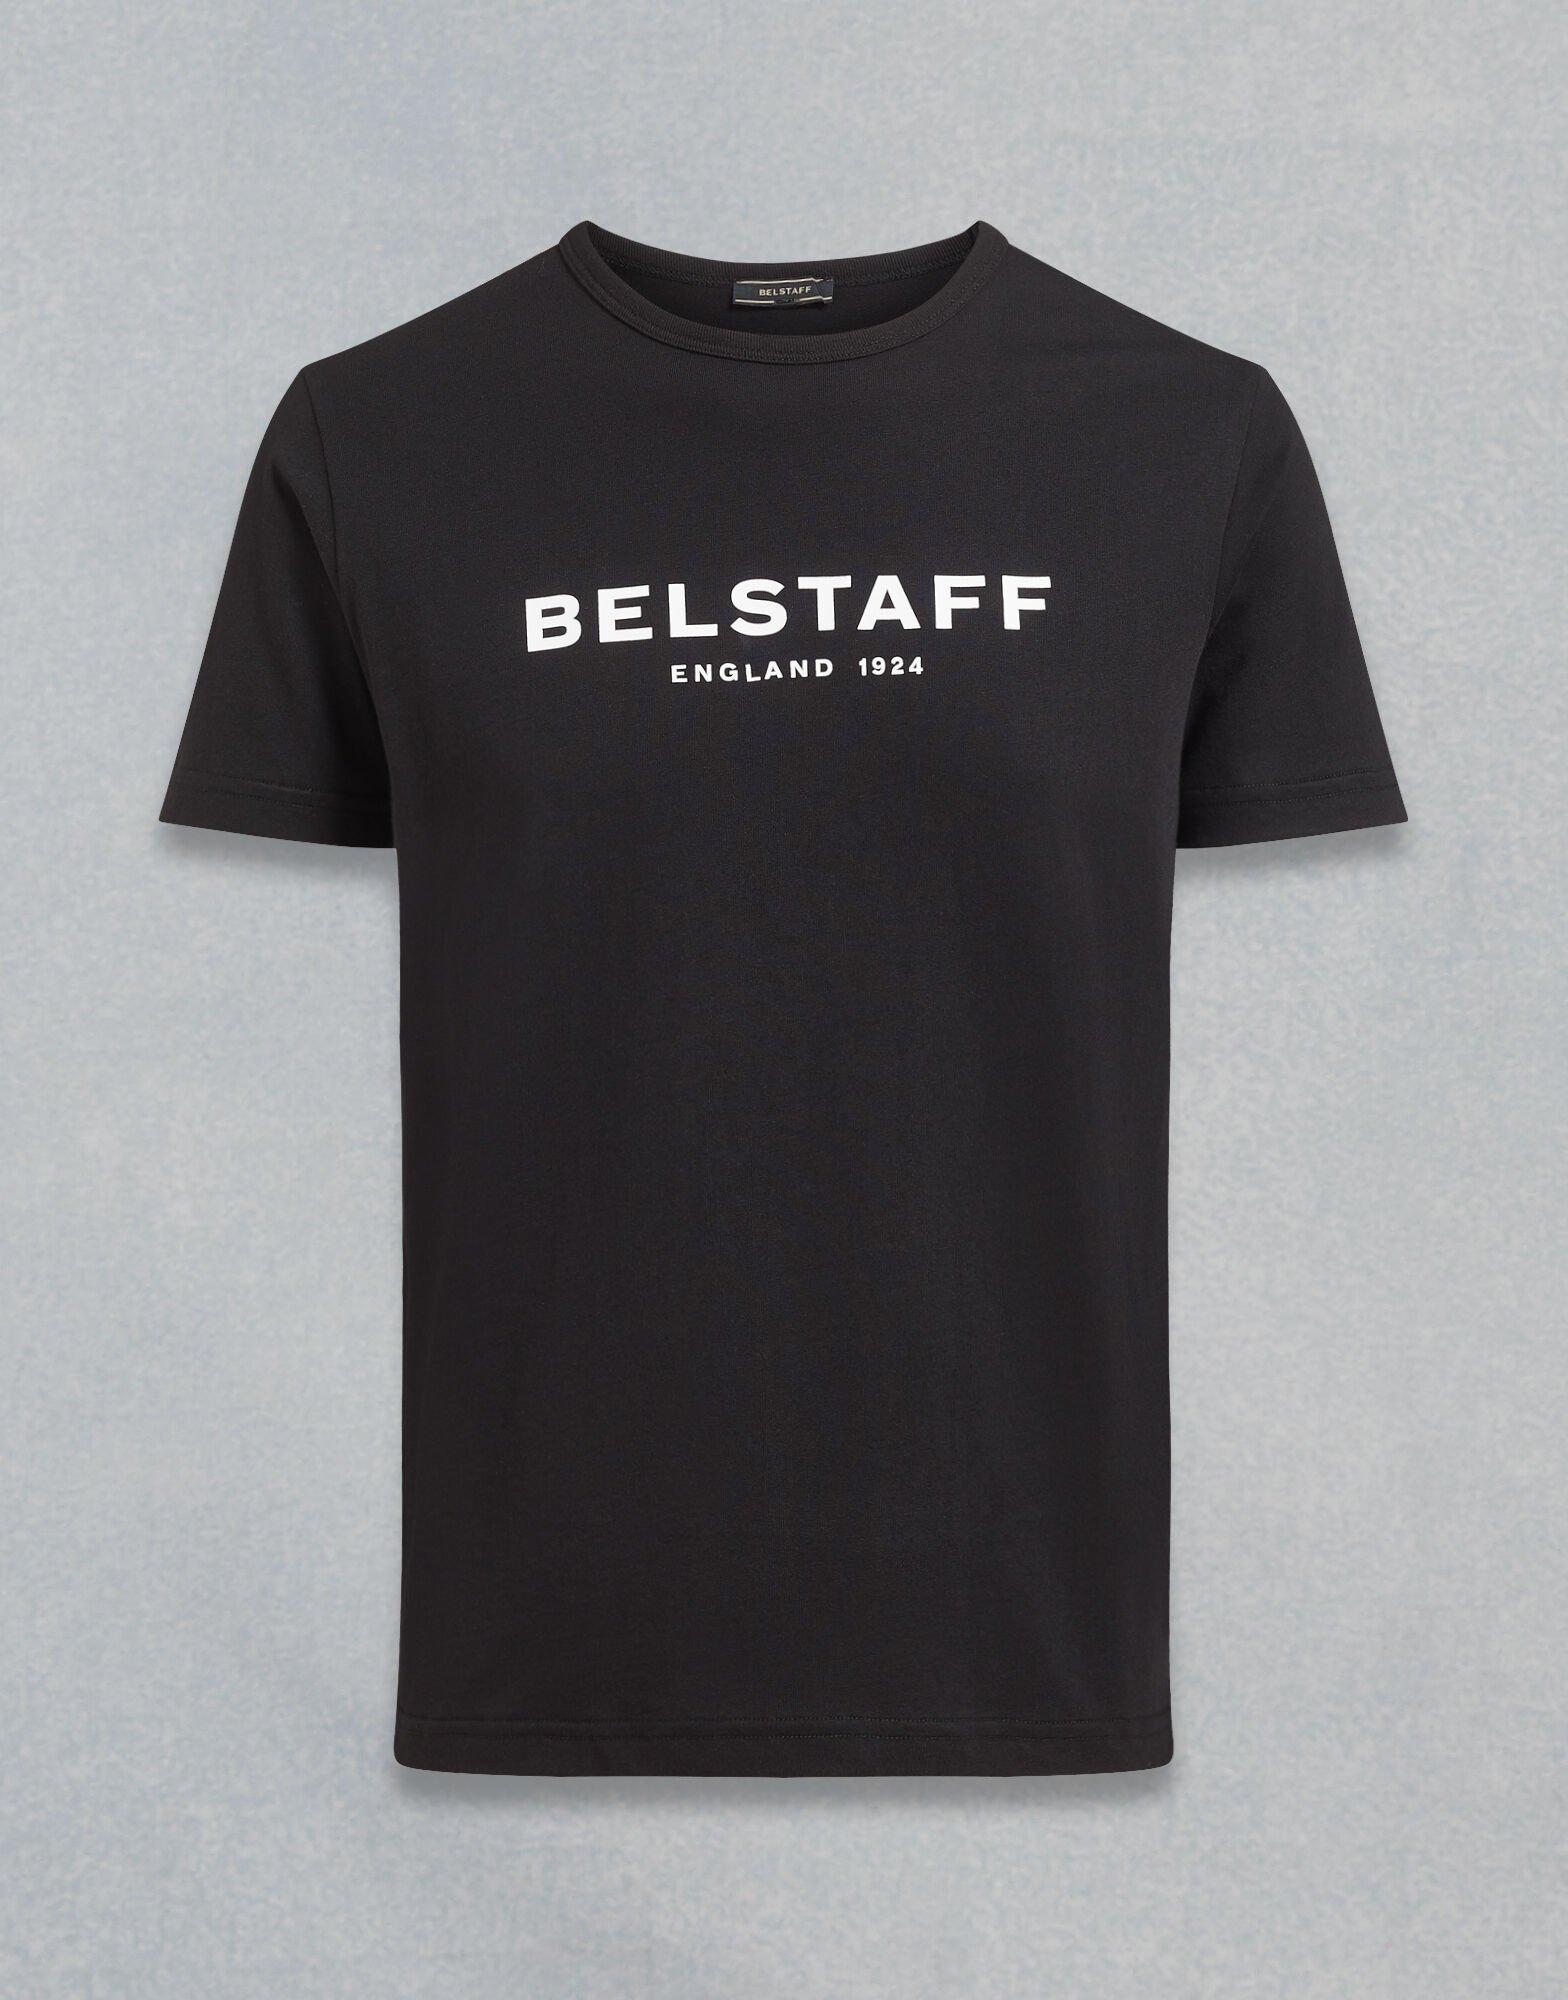 Belstaff Cotton 1924 Logo T-shirt, Black Tee for Men - Lyst